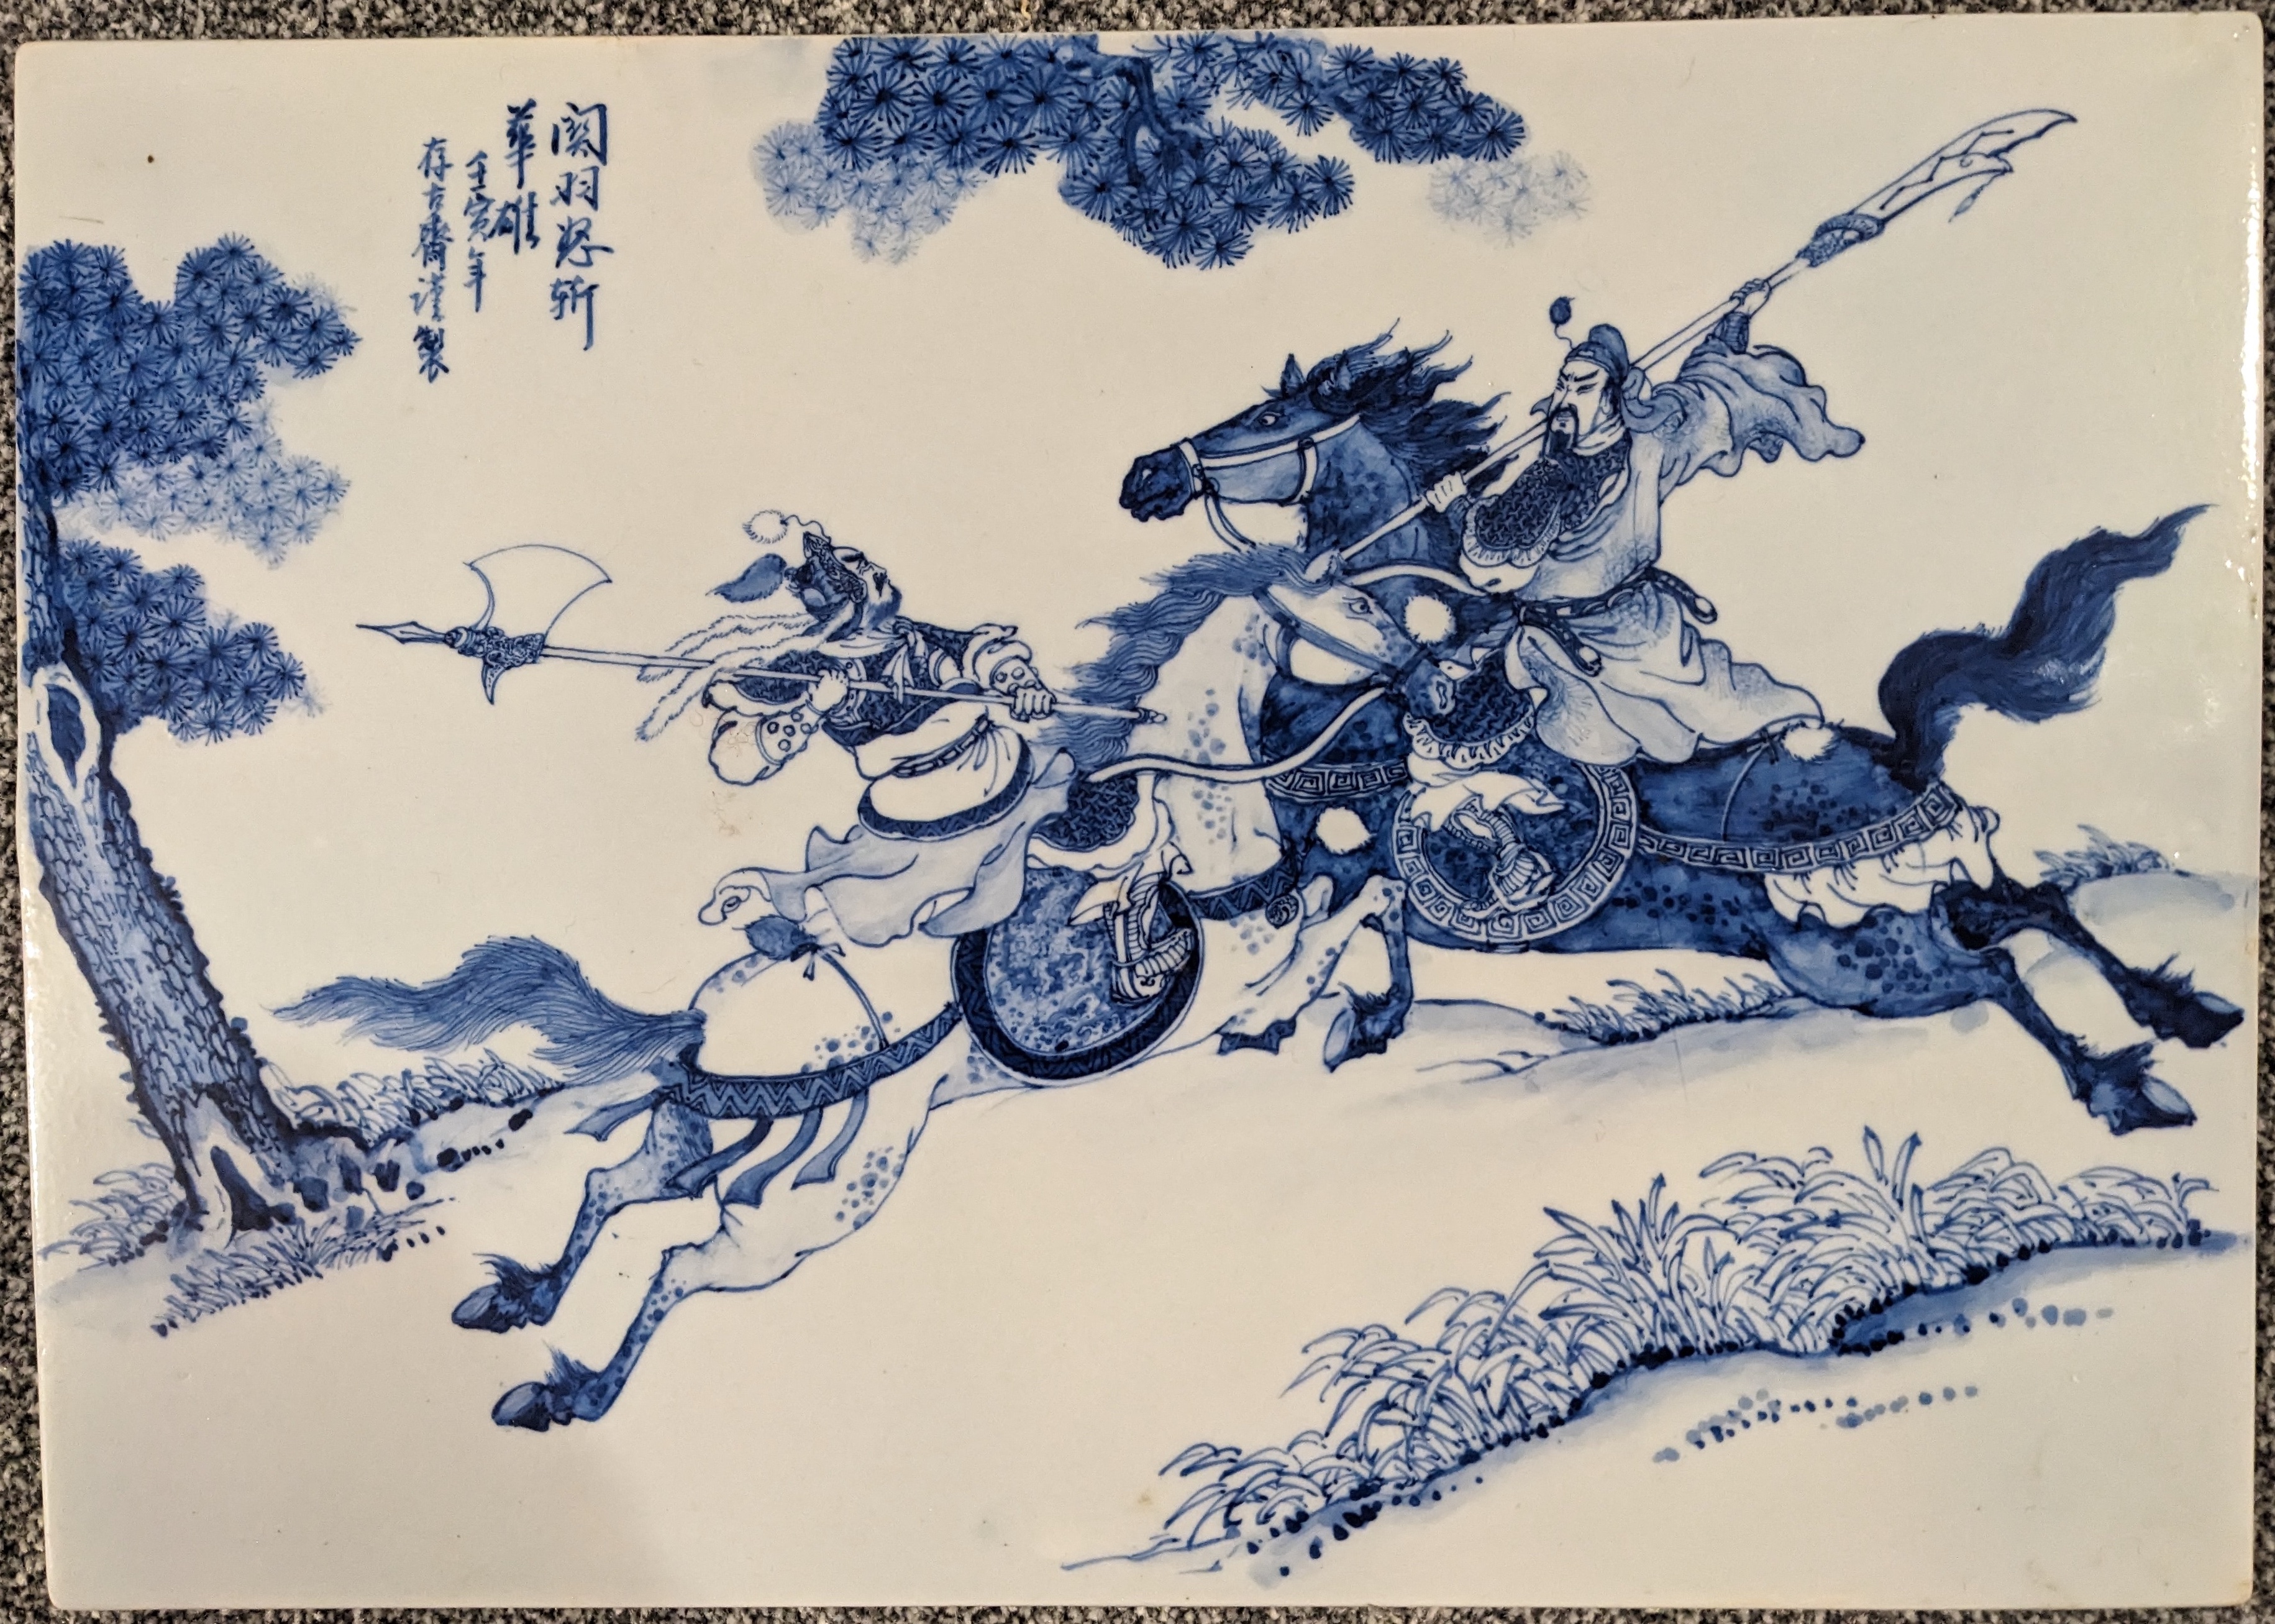 Guan Yu battles Hua Xiong